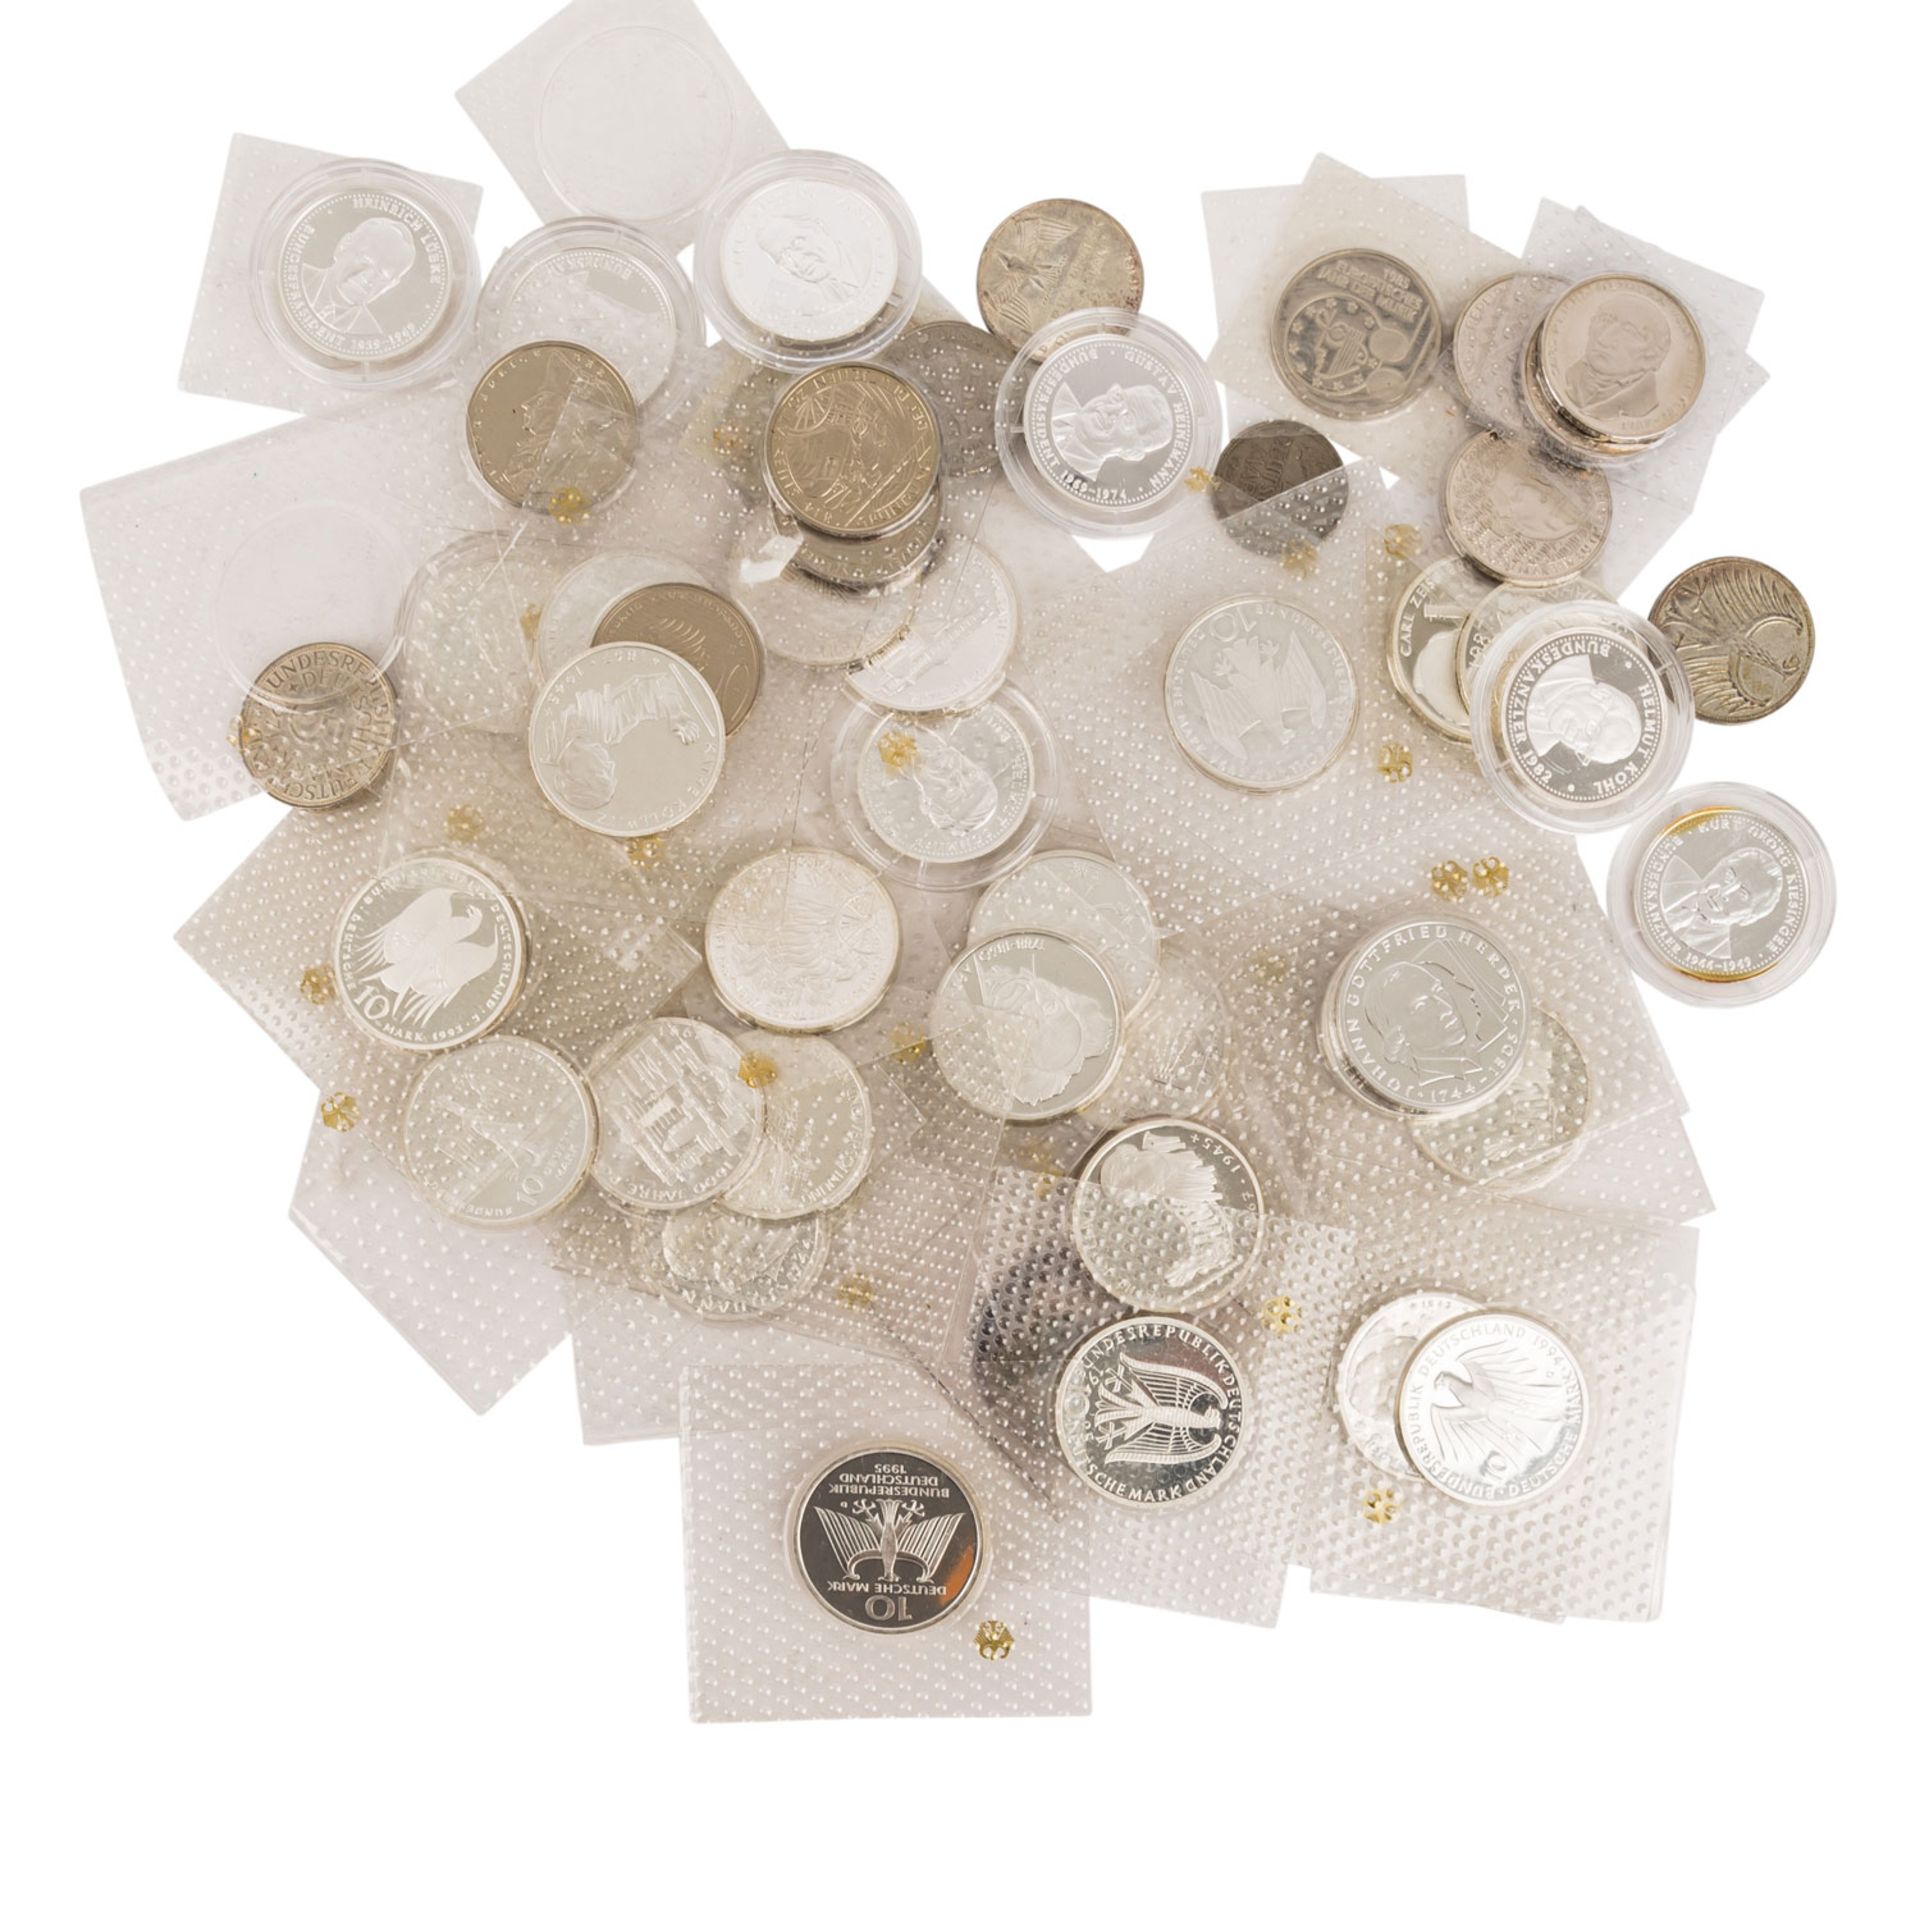 Münzen und Medaillen, BRD Gedenkmünzen,Österreich Schillinge, Medaillen 40 Jahre BRD fast nahezu 500 - Bild 8 aus 12